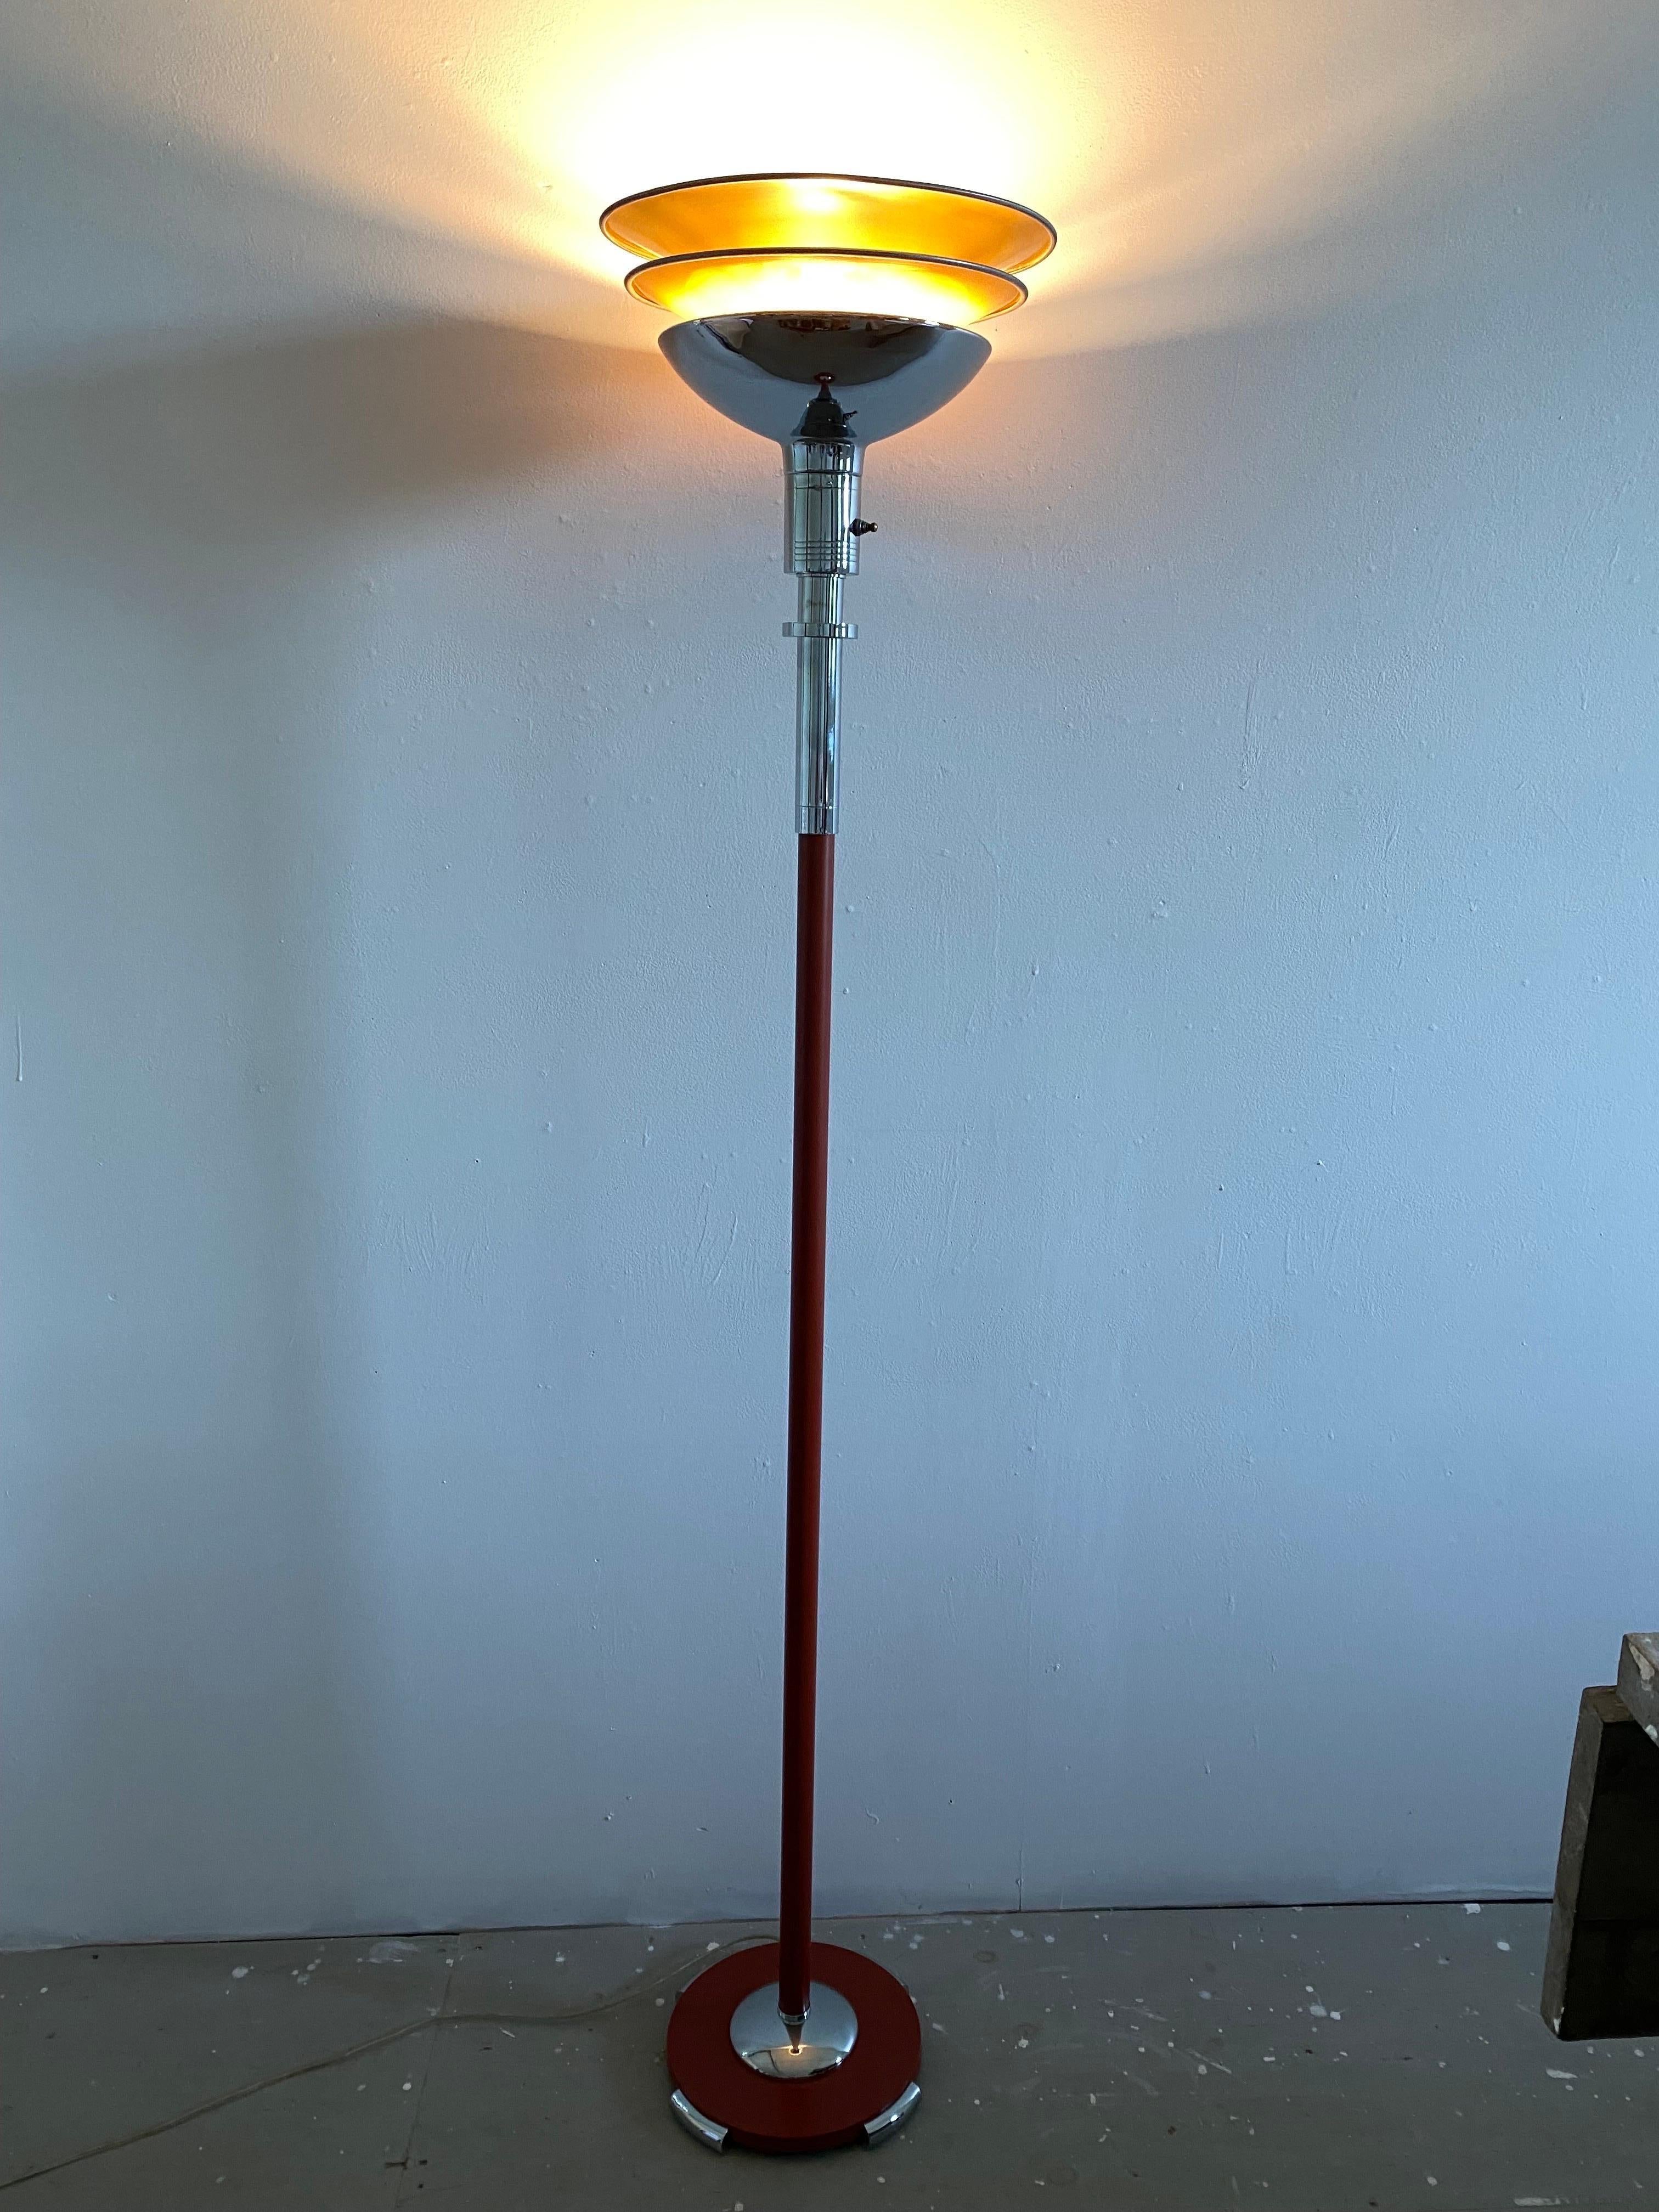 Gilbert Rohde Torchiere für Mutual Sunset Lamp Company. Schönes Exemplar in der schwer zu findenden Farbe Rusty Red! Die ursprüngliche hellbraune Farbe des Aluminiumreflektorschirms bleibt erhalten. Chrom wurde irgendwann erneuert, alles sieht sehr